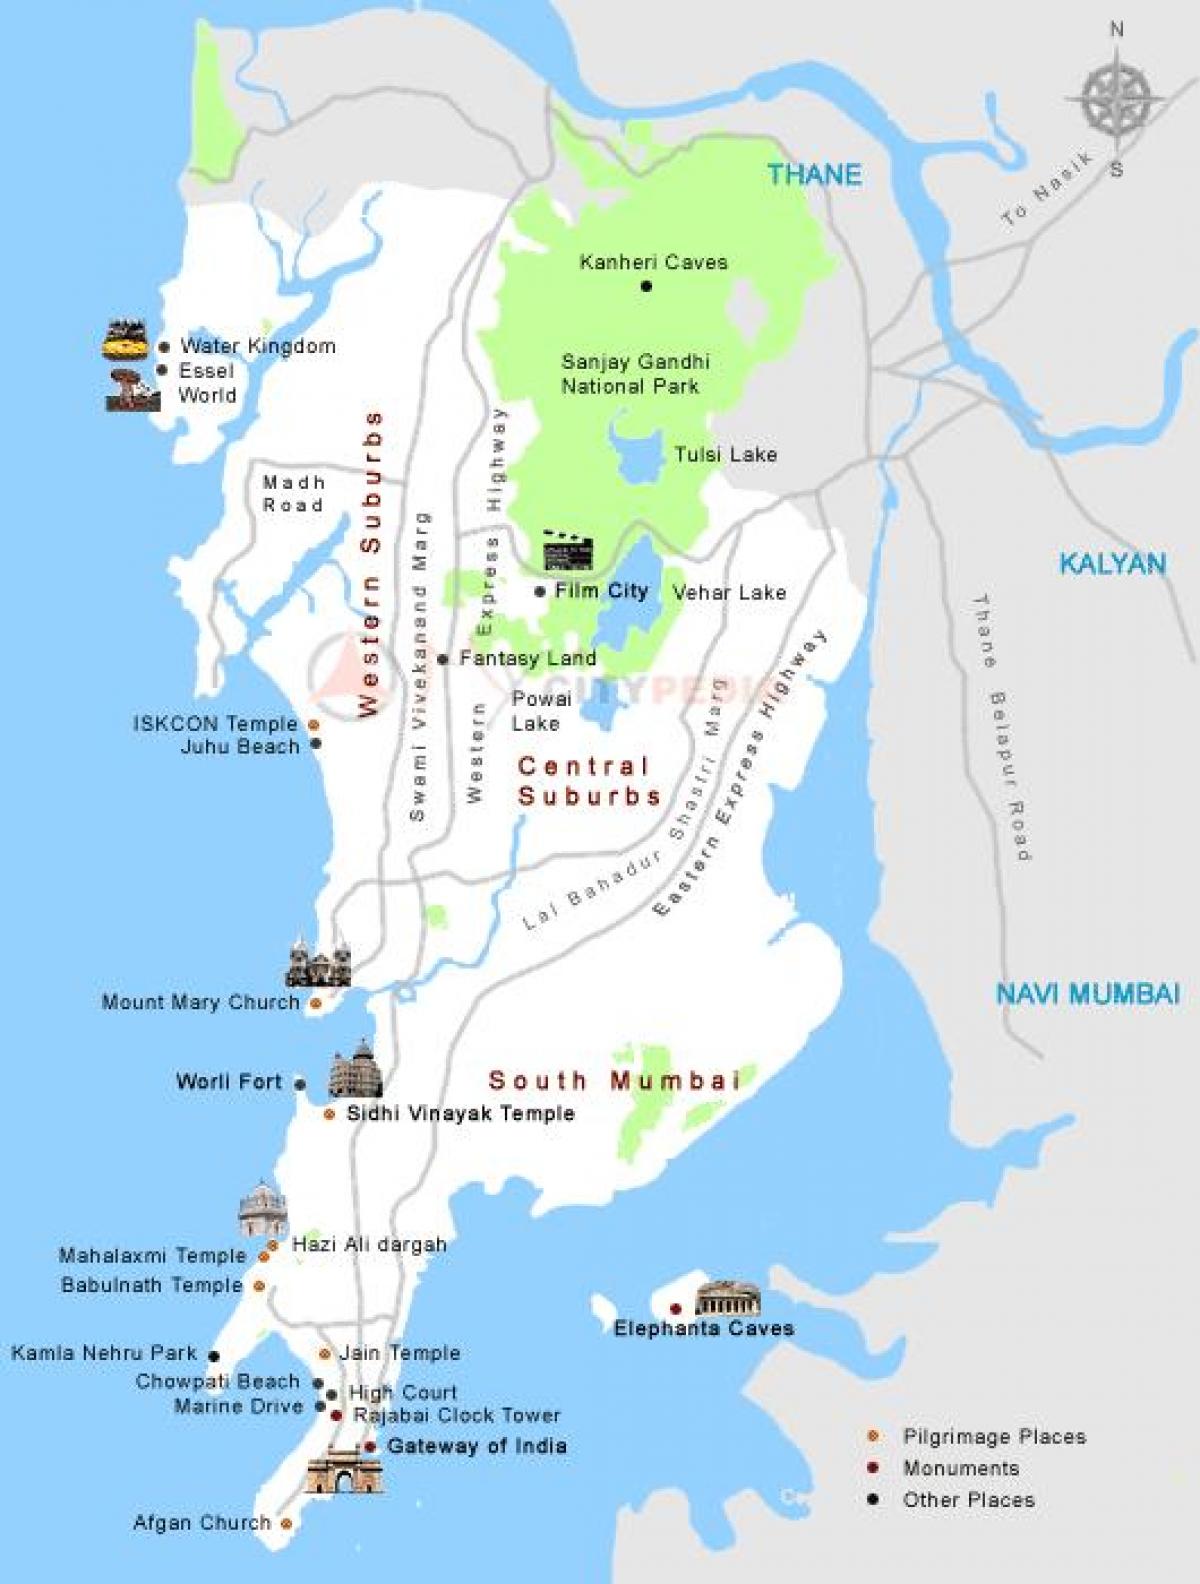 Mumbai darshan luoghi la mappa